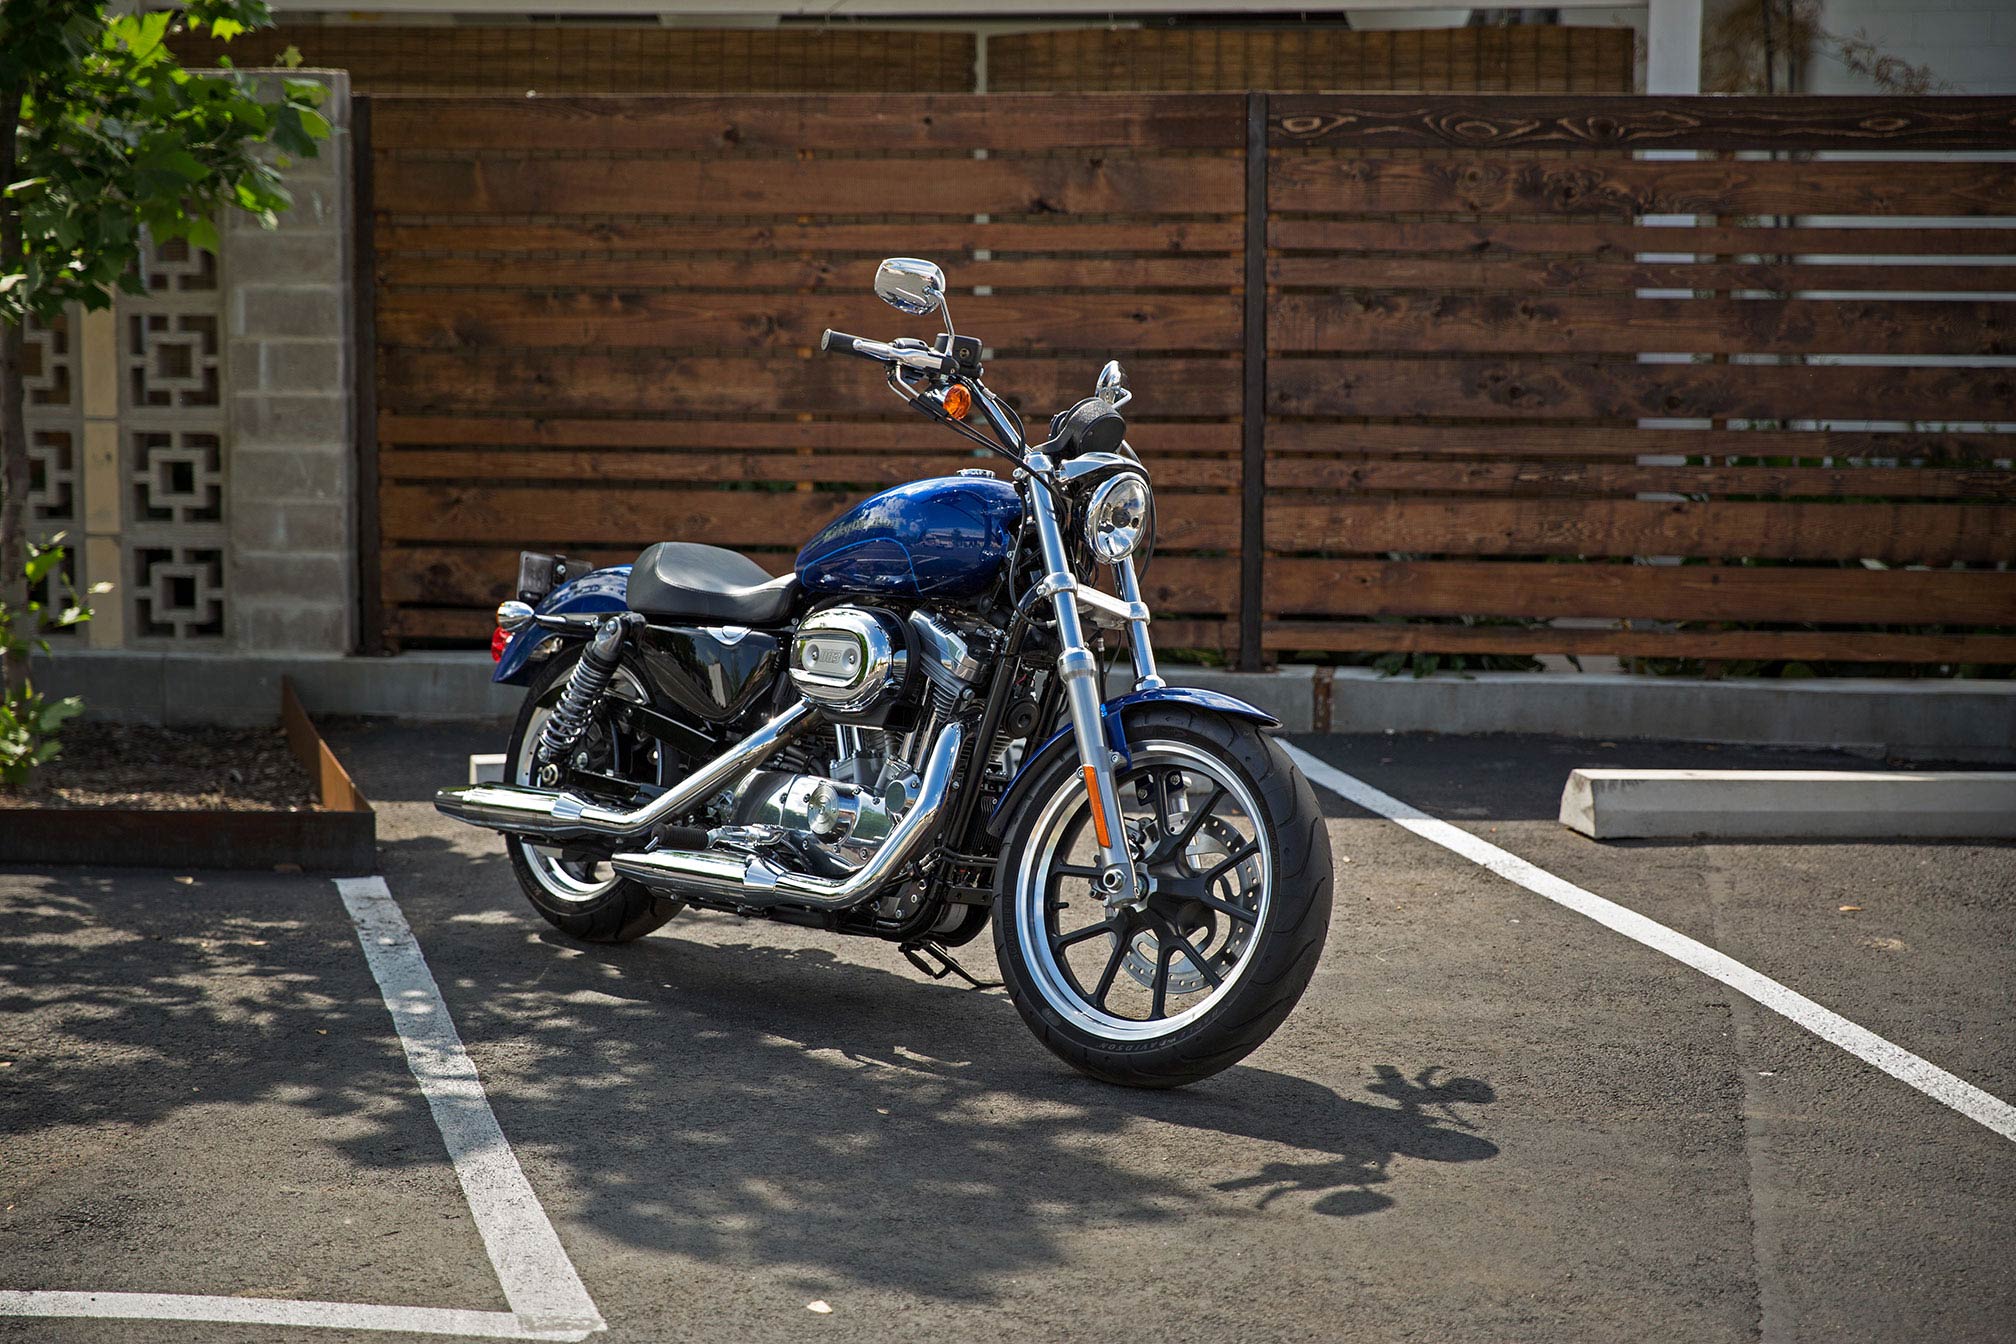 HQ Harley-Davidson SuperLow Wallpapers | File 459.38Kb